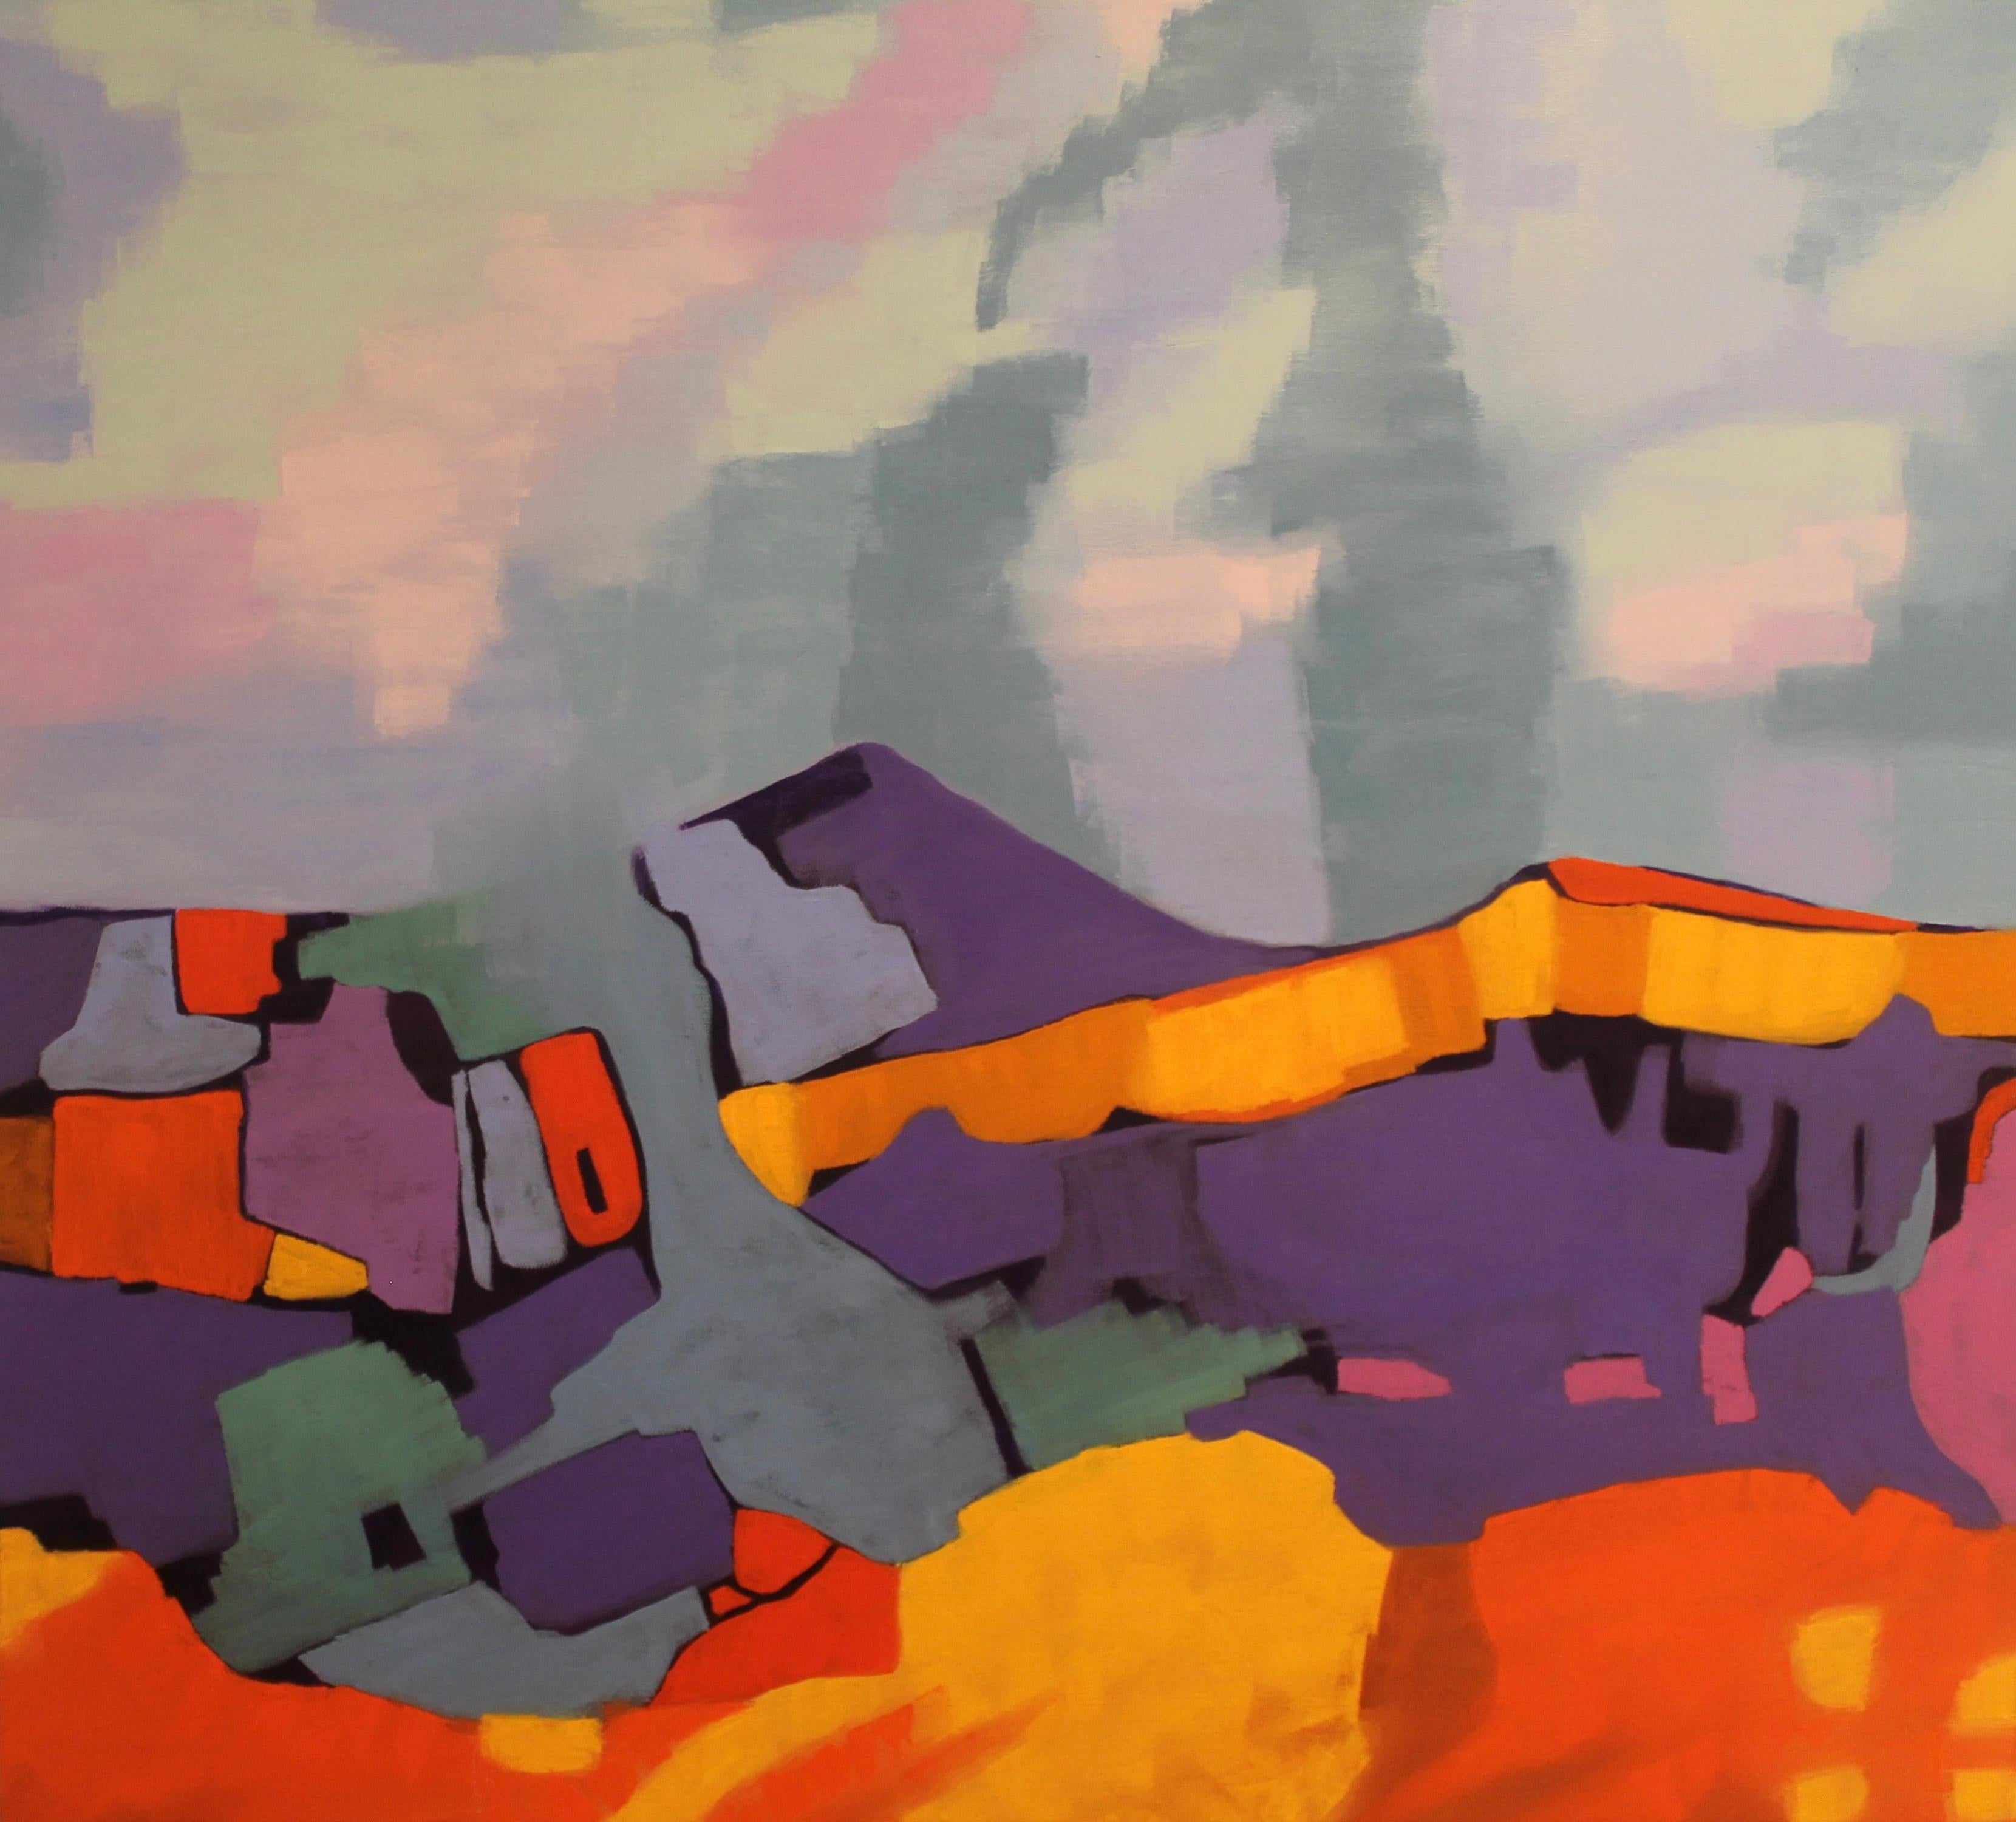 Abstract Painting Marcia Wise - "Crescente", contemporain, abstrait, orange, rouge, violet, vert, peinture à l'huile